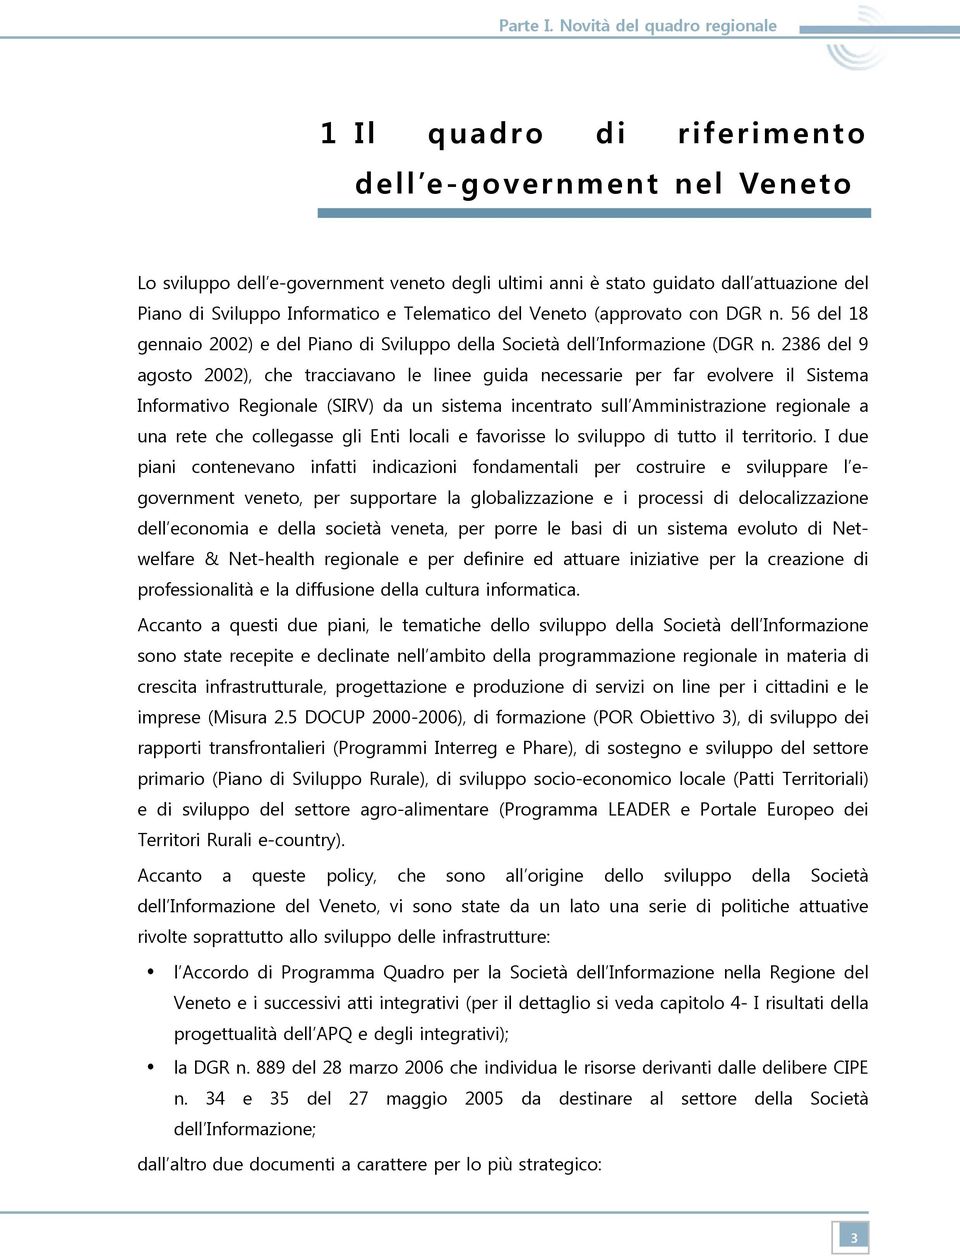 Informatico e Telematico del Veneto (approvato con DGR n. 56 del 18 gennaio 2002) e del Piano di Sviluppo della Società dell Informazione (DGR n.